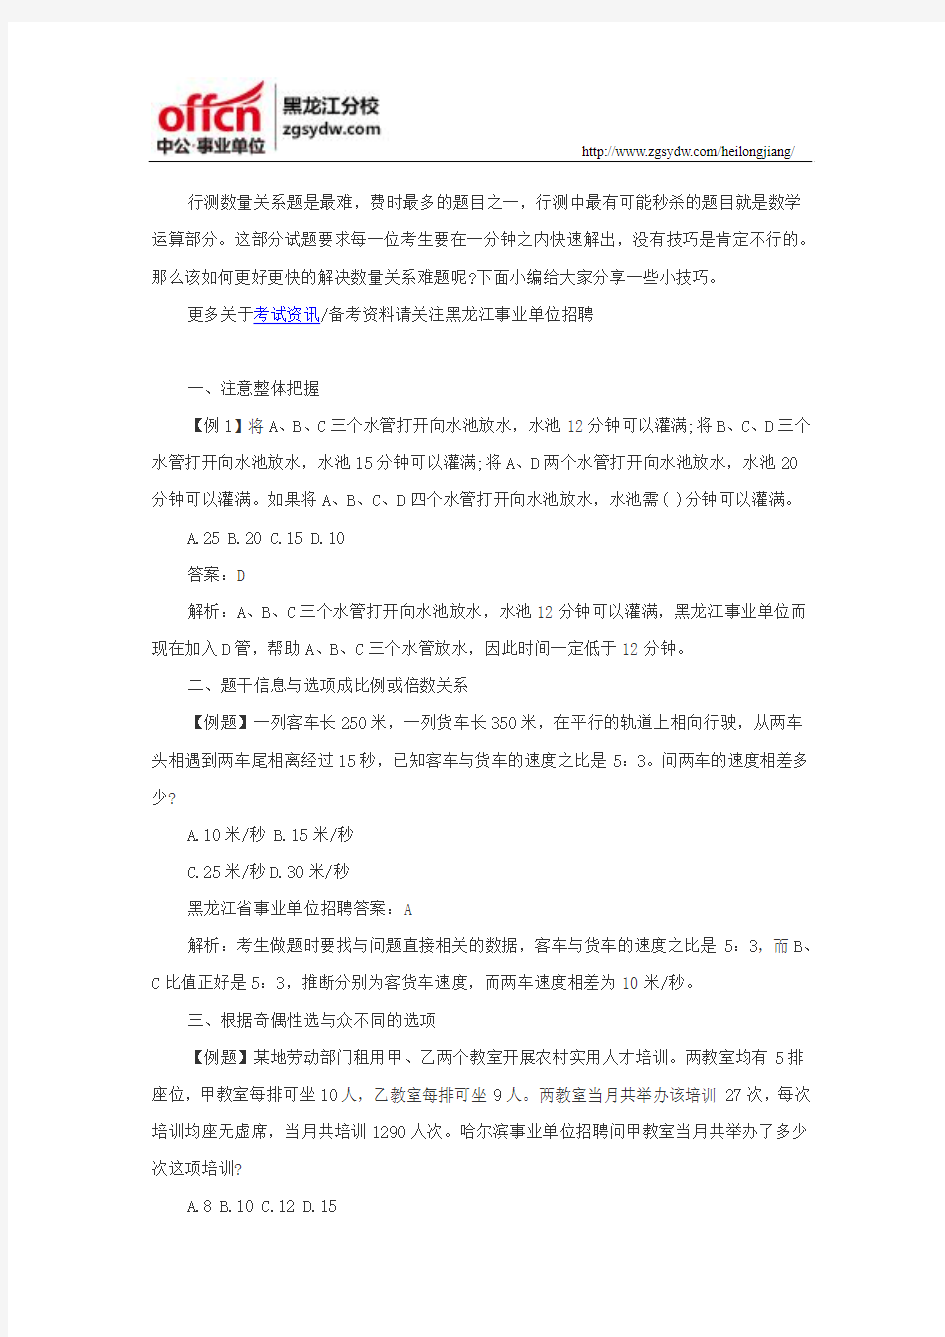 黑龙江省事业单位考试行测备考答题技巧